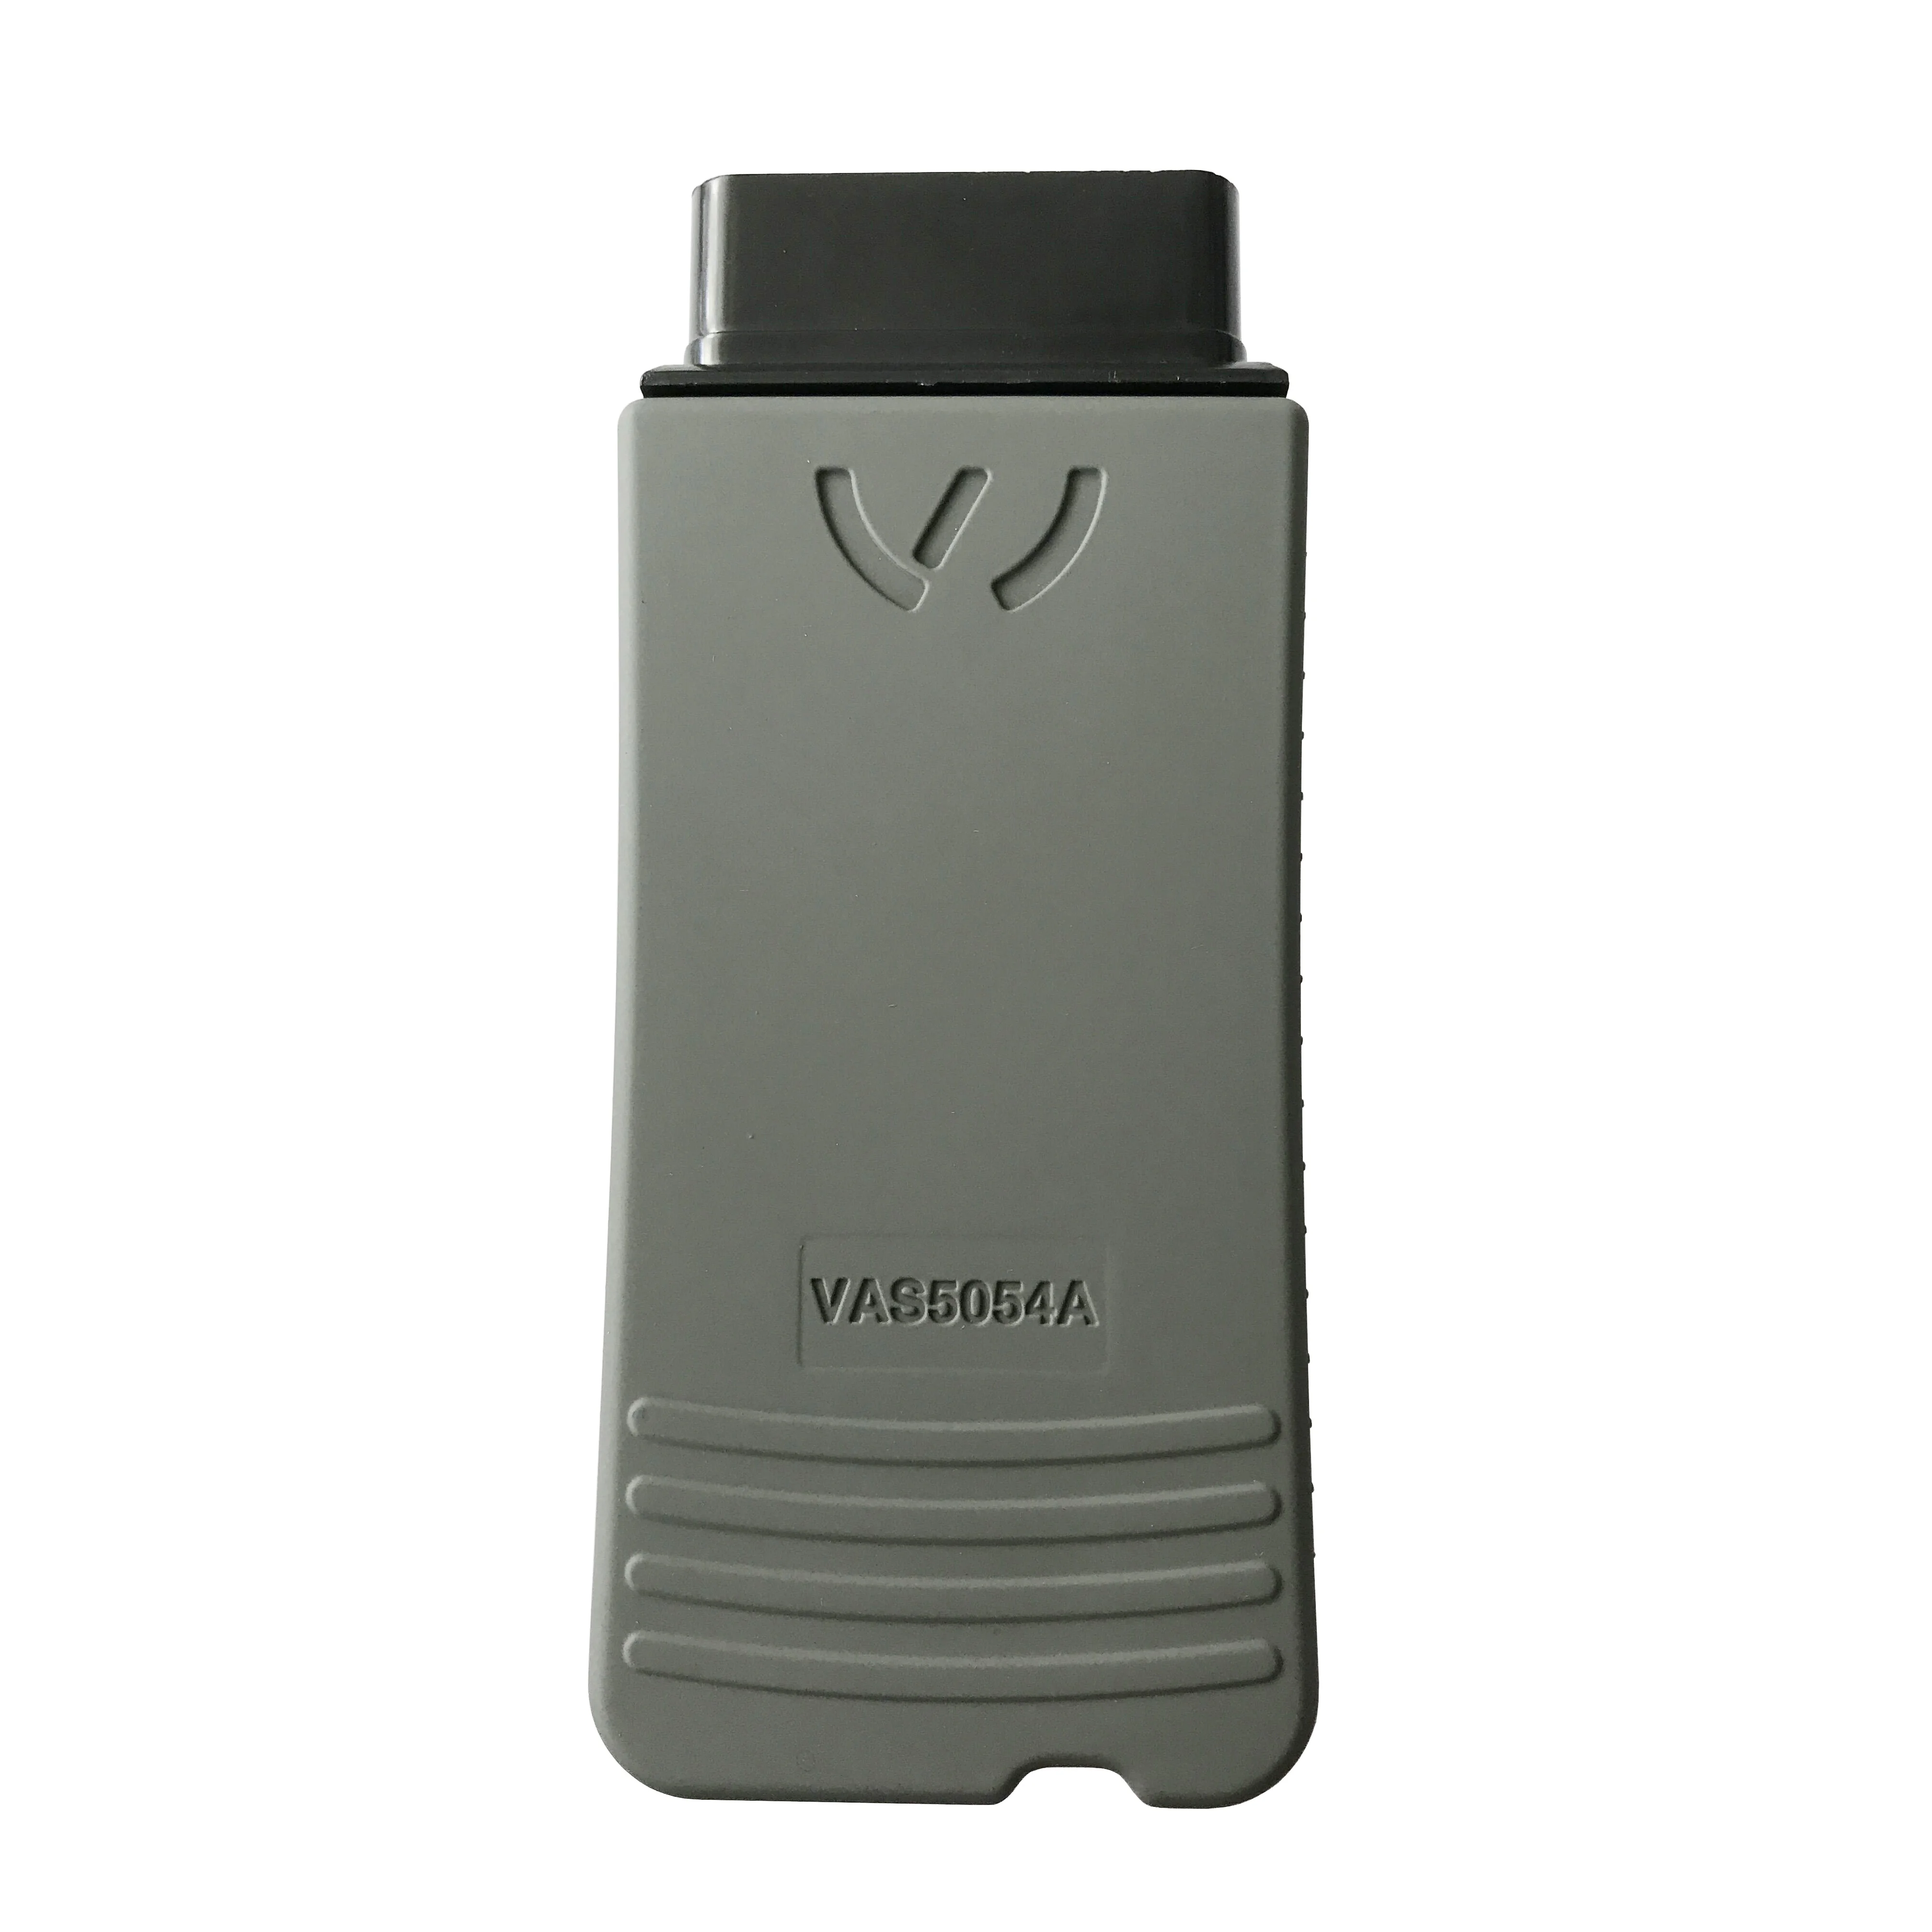 VAS5054a ODIS V5.16 VAS5054 с чипом AMB2300 OKI чип Автомобильный сканер инструмент odis для V-W/Au-di Honda toyota автомобилей диагностики